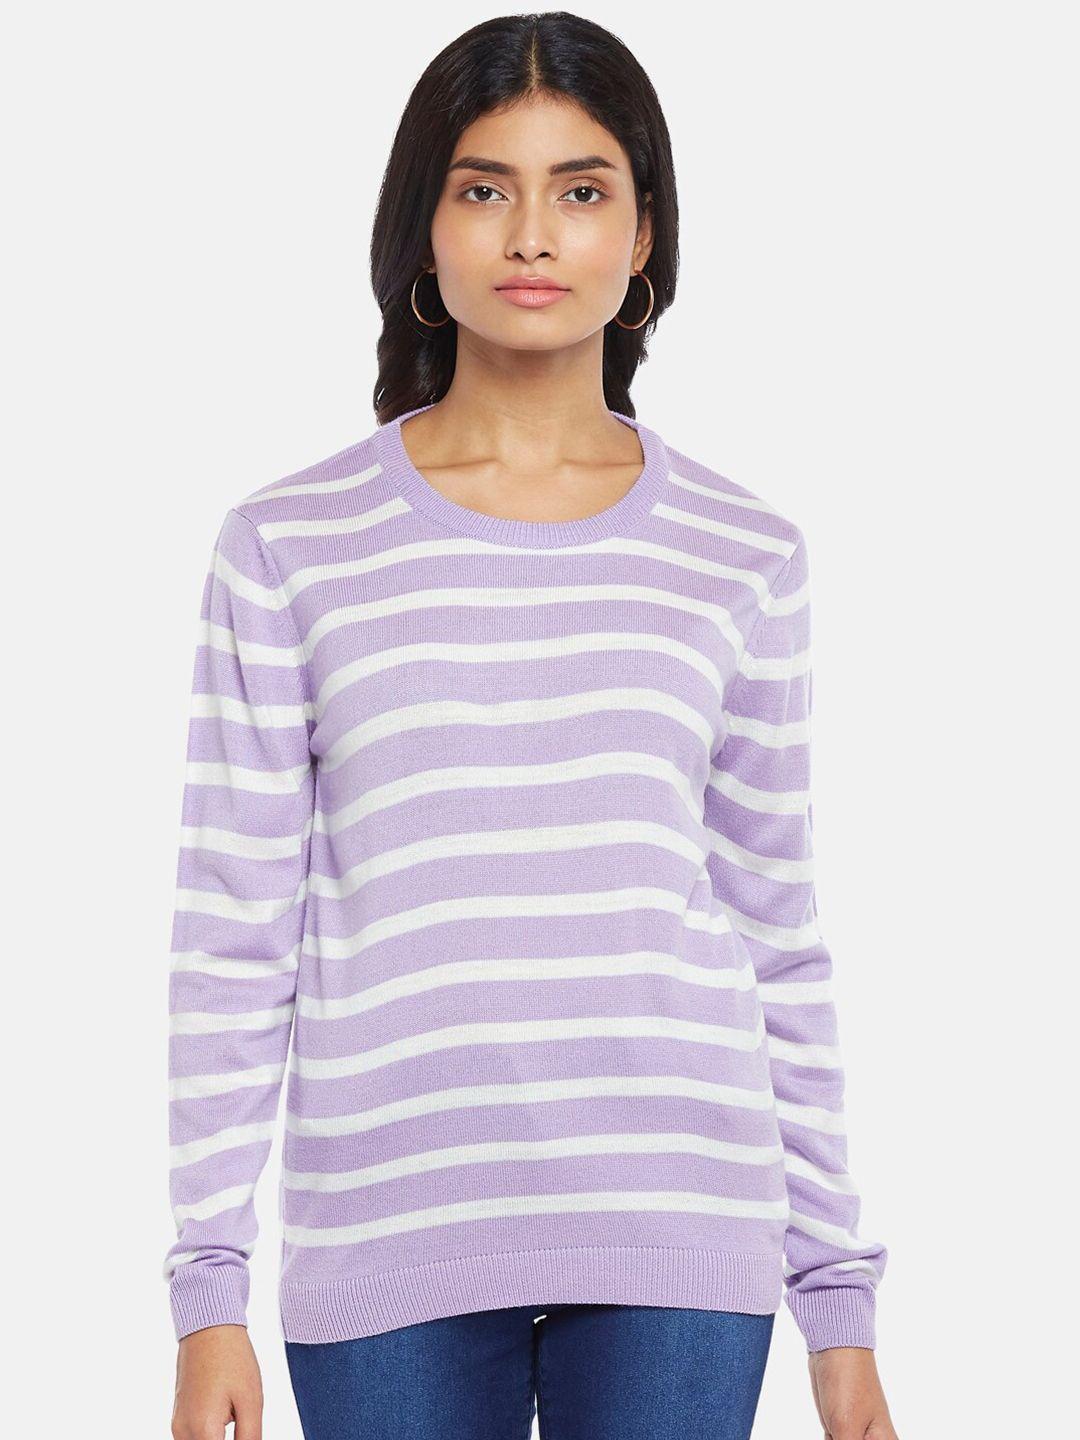 honey-by-pantaloons-women-purple-&-white-striped-top